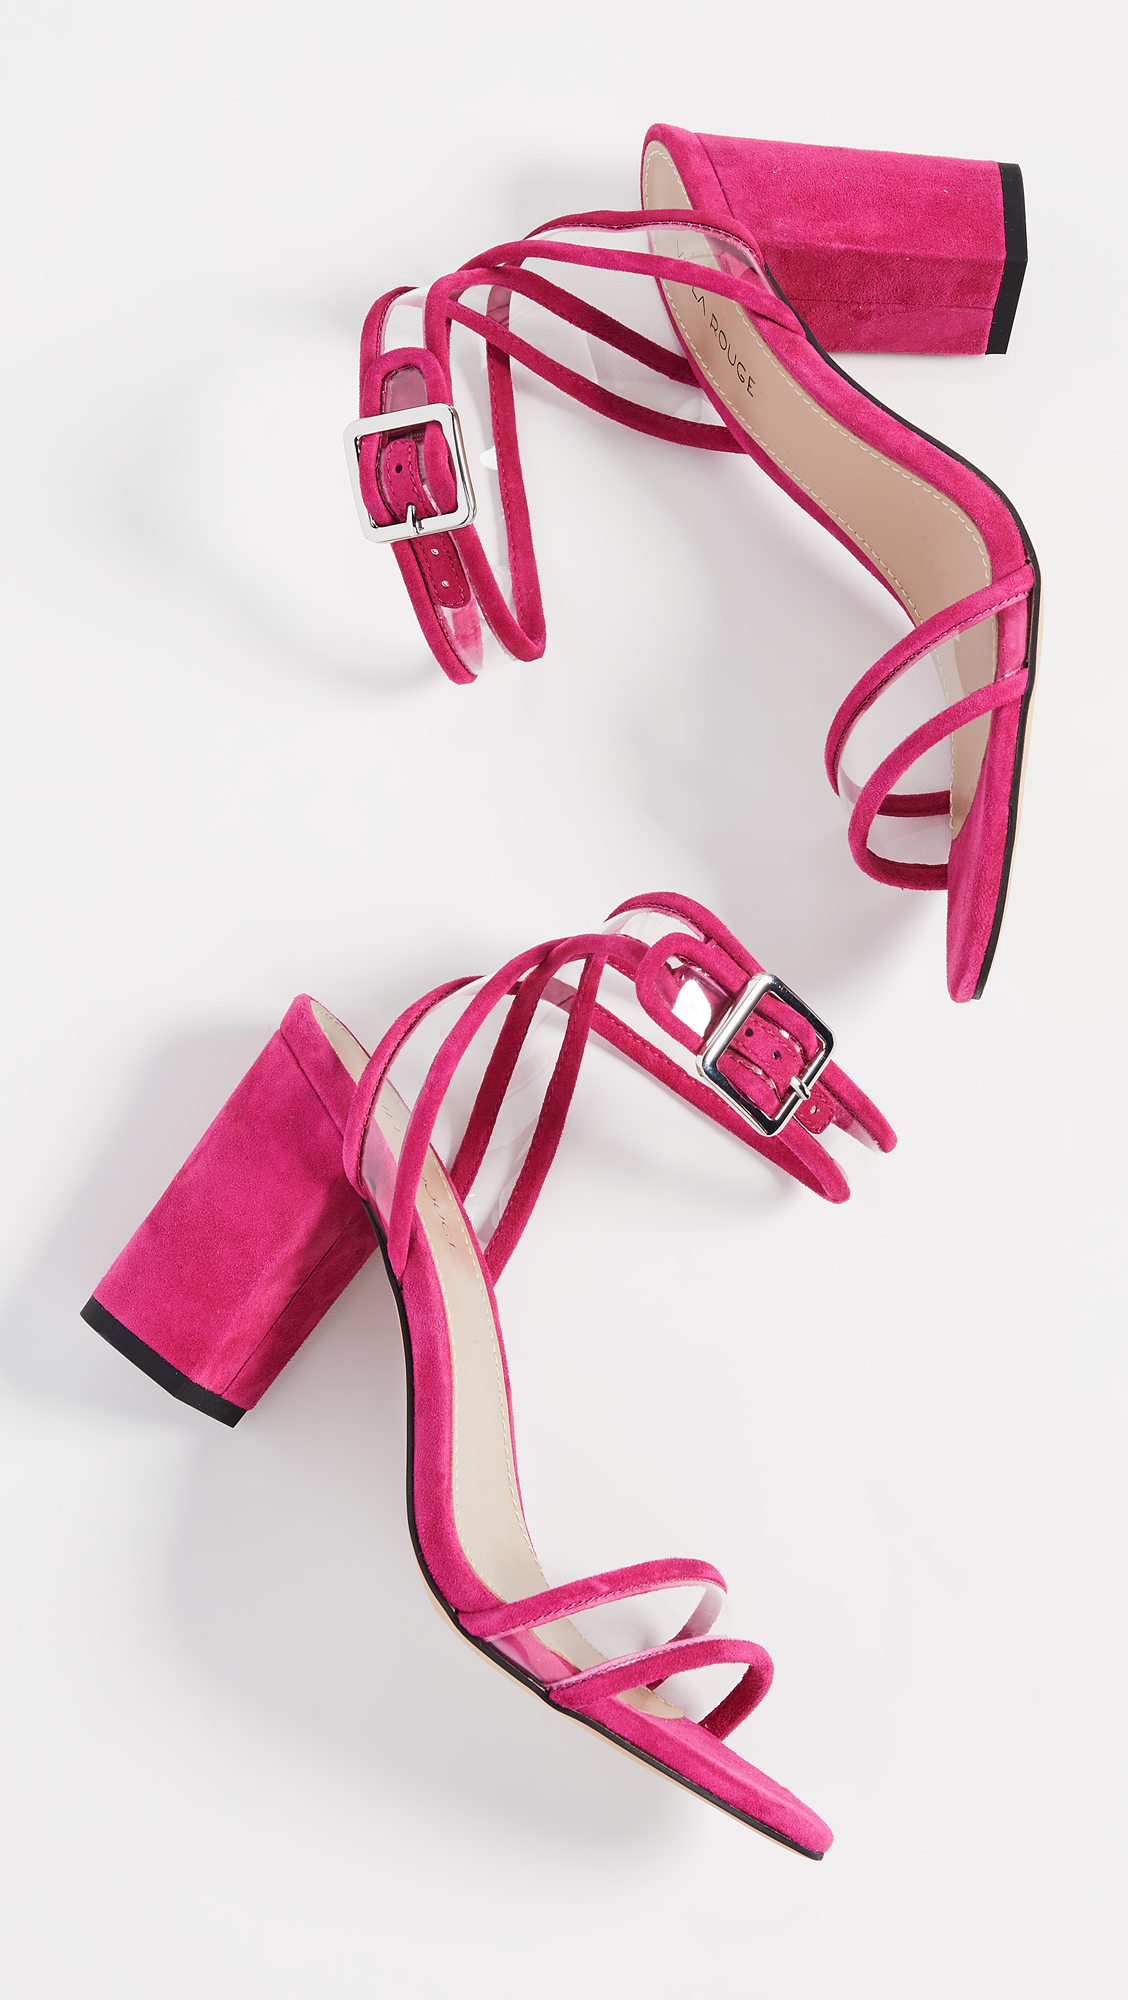 Pink felt platform heels